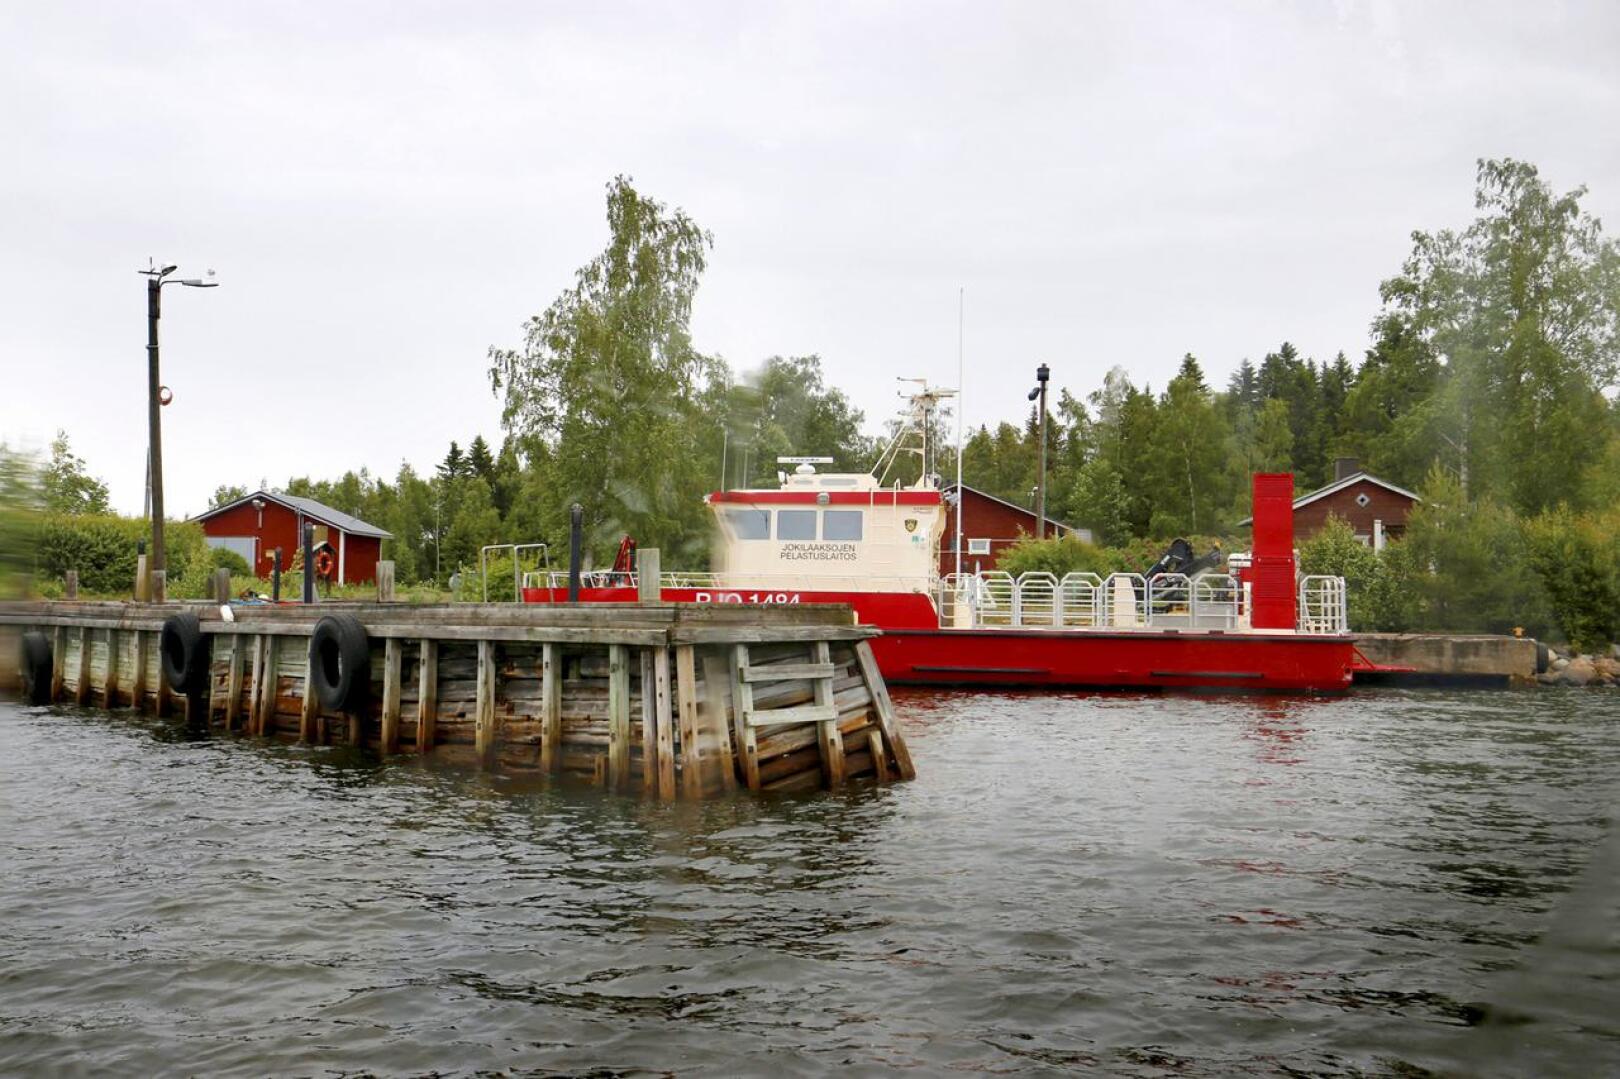 Pelastusjohtaja Jarmo Haapasen mukaan merellinen öljyntorjunta ja pelastustoiminta tehostuvat Kalajoella. Arkistokuva on kesältä 2018, jolloin Kalajoen asema oli vielä merivartioston käytössä.